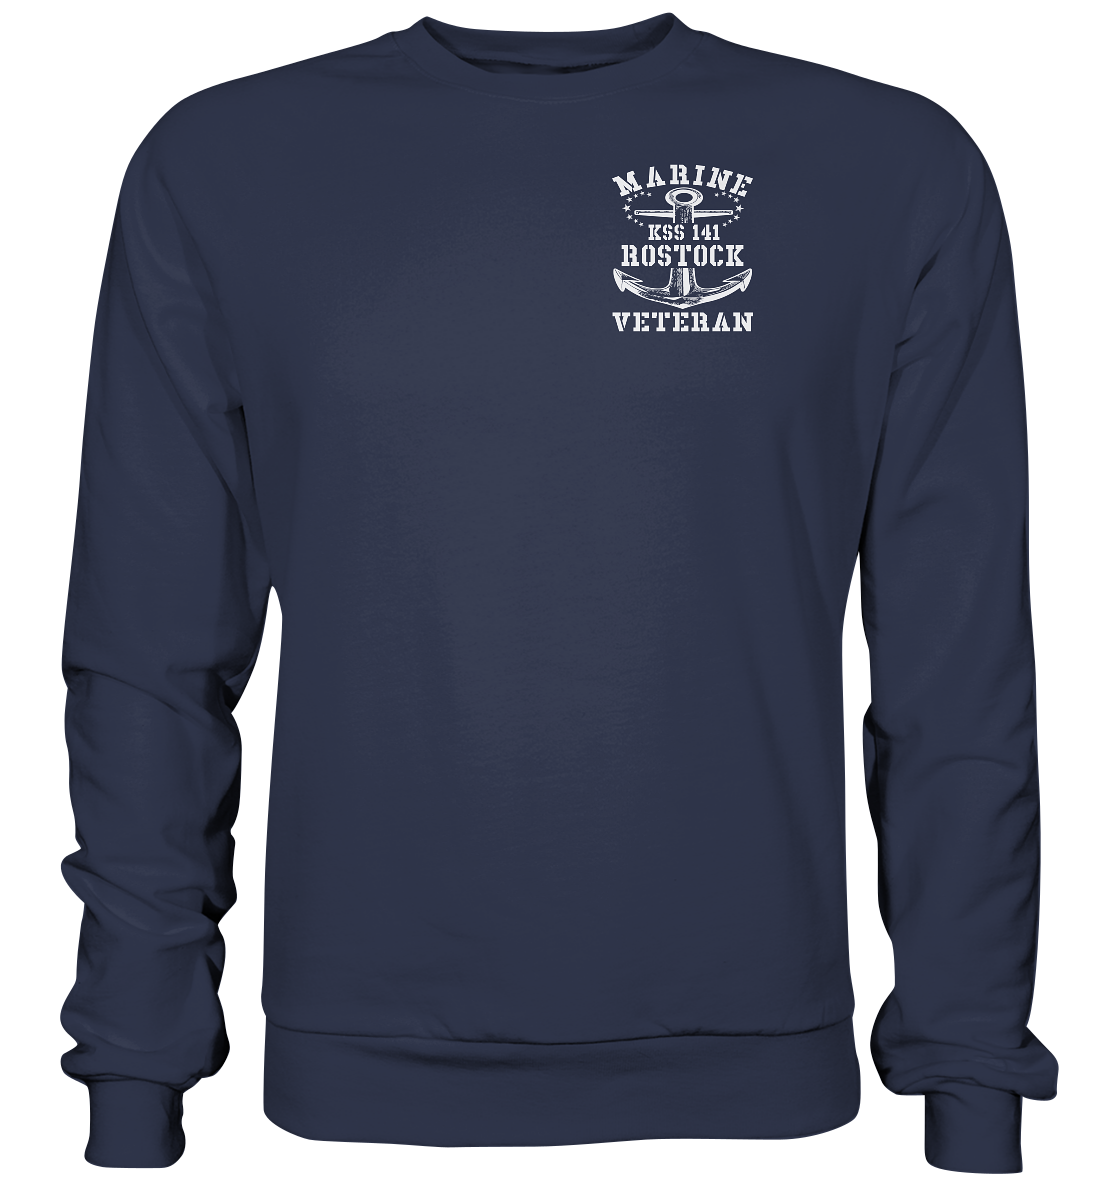 KSS 141 ROSTOCK Marine Veteran Brustlogo - Premium Sweatshirt